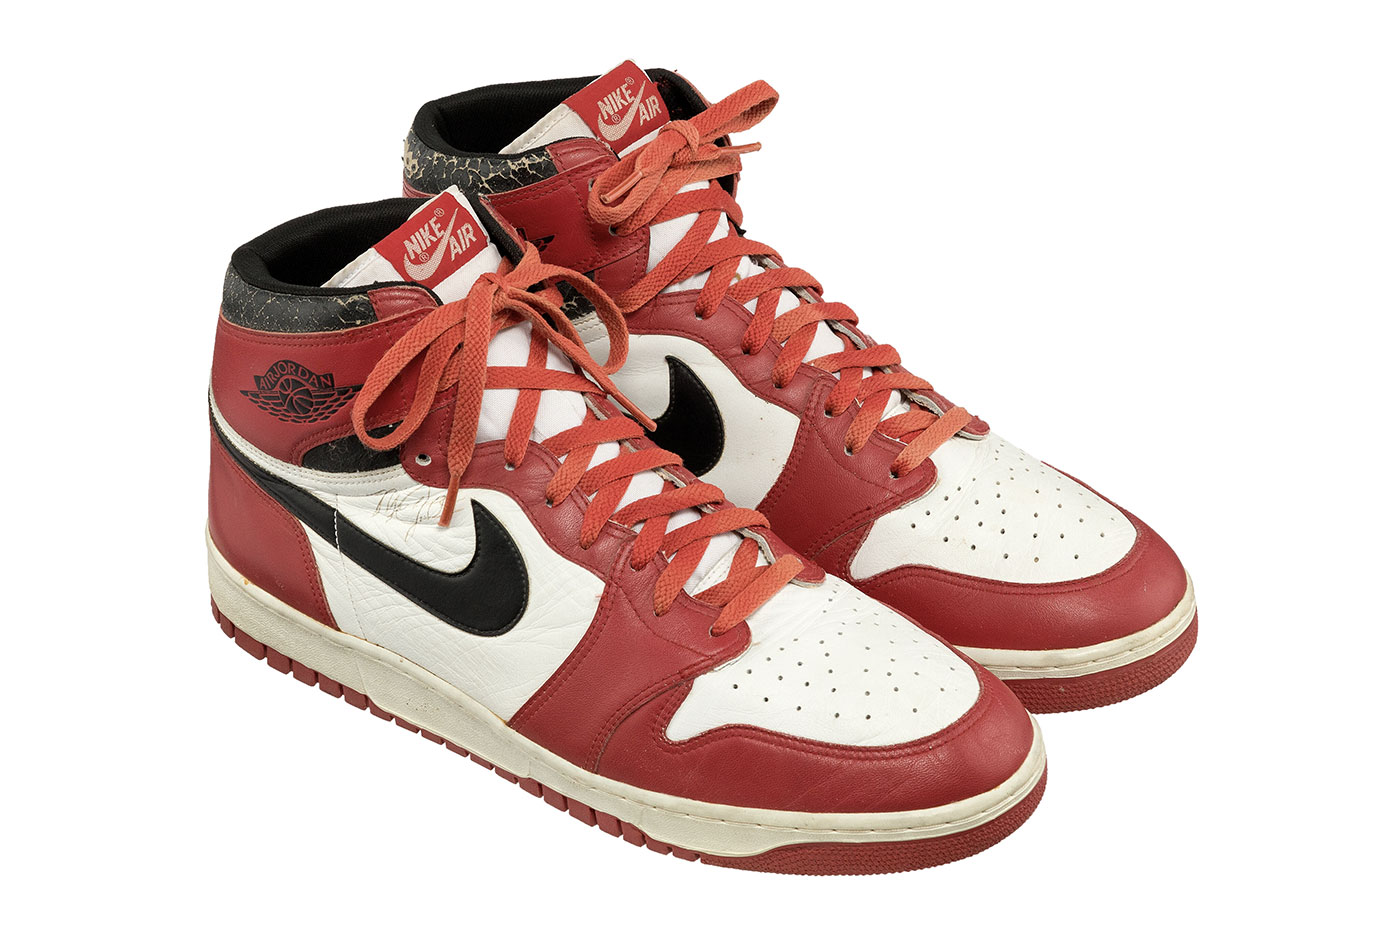 Nike Air Jordan 1 คู่ที่สวมลงสนามในปี 1986 พร้อมลายเซ็นของ Michael Jordan พร้อมสำหรับการประมูลแล้ว